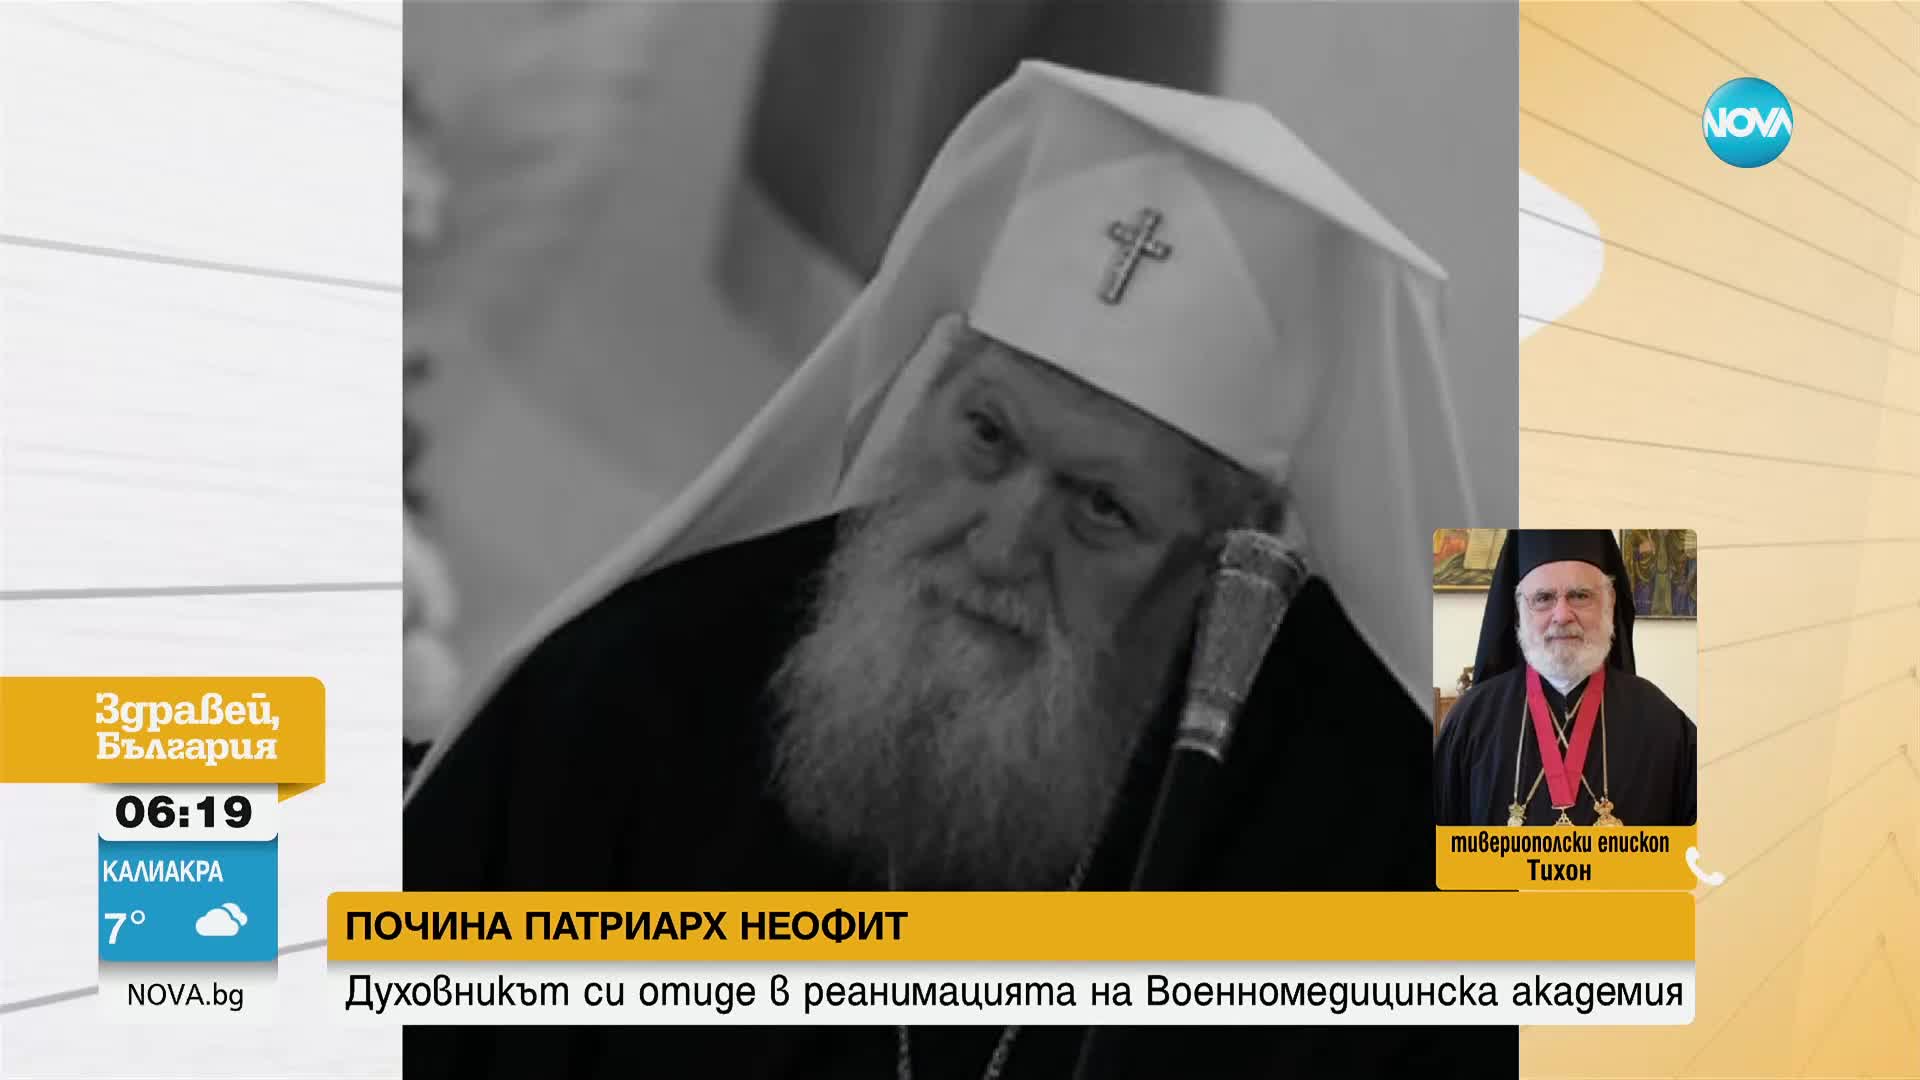 Епископ Тихон: Патриарх Неофит се опита да въведе хармония и разбирателство в нашата църква